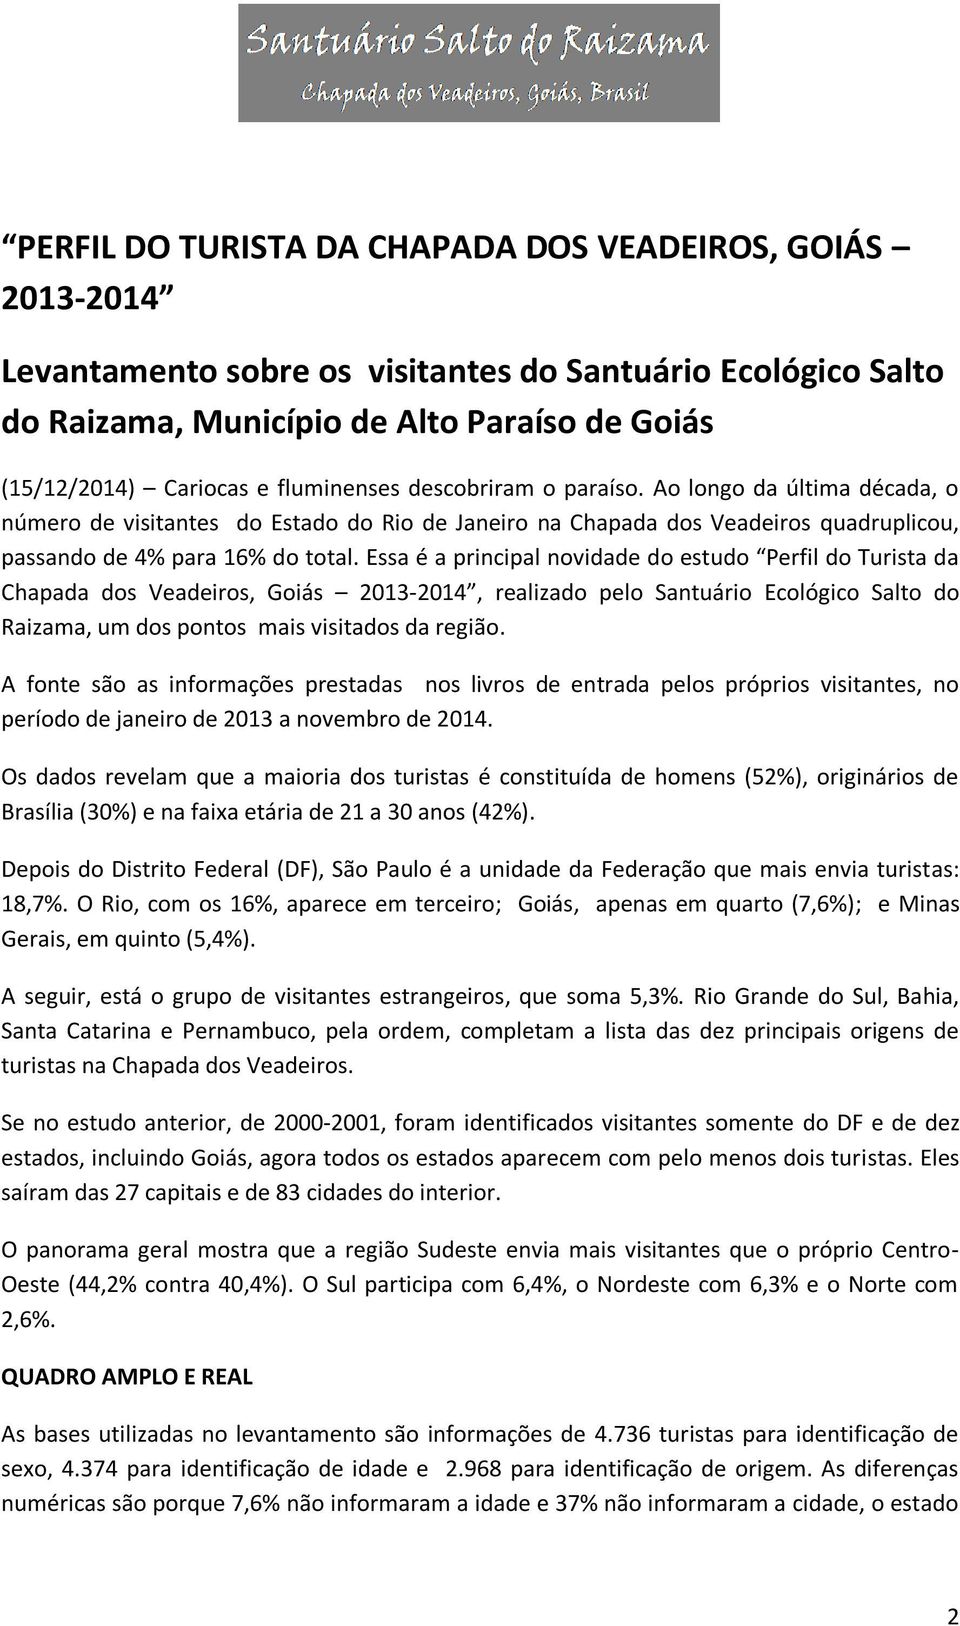 Essa é a principal novidade do estudo Perfil do Turista da Chapada dos Veadeiros, Goiás 2013-2014, realizado pelo Santuário Ecológico Salto do Raizama, um dos pontos mais visitados da região.